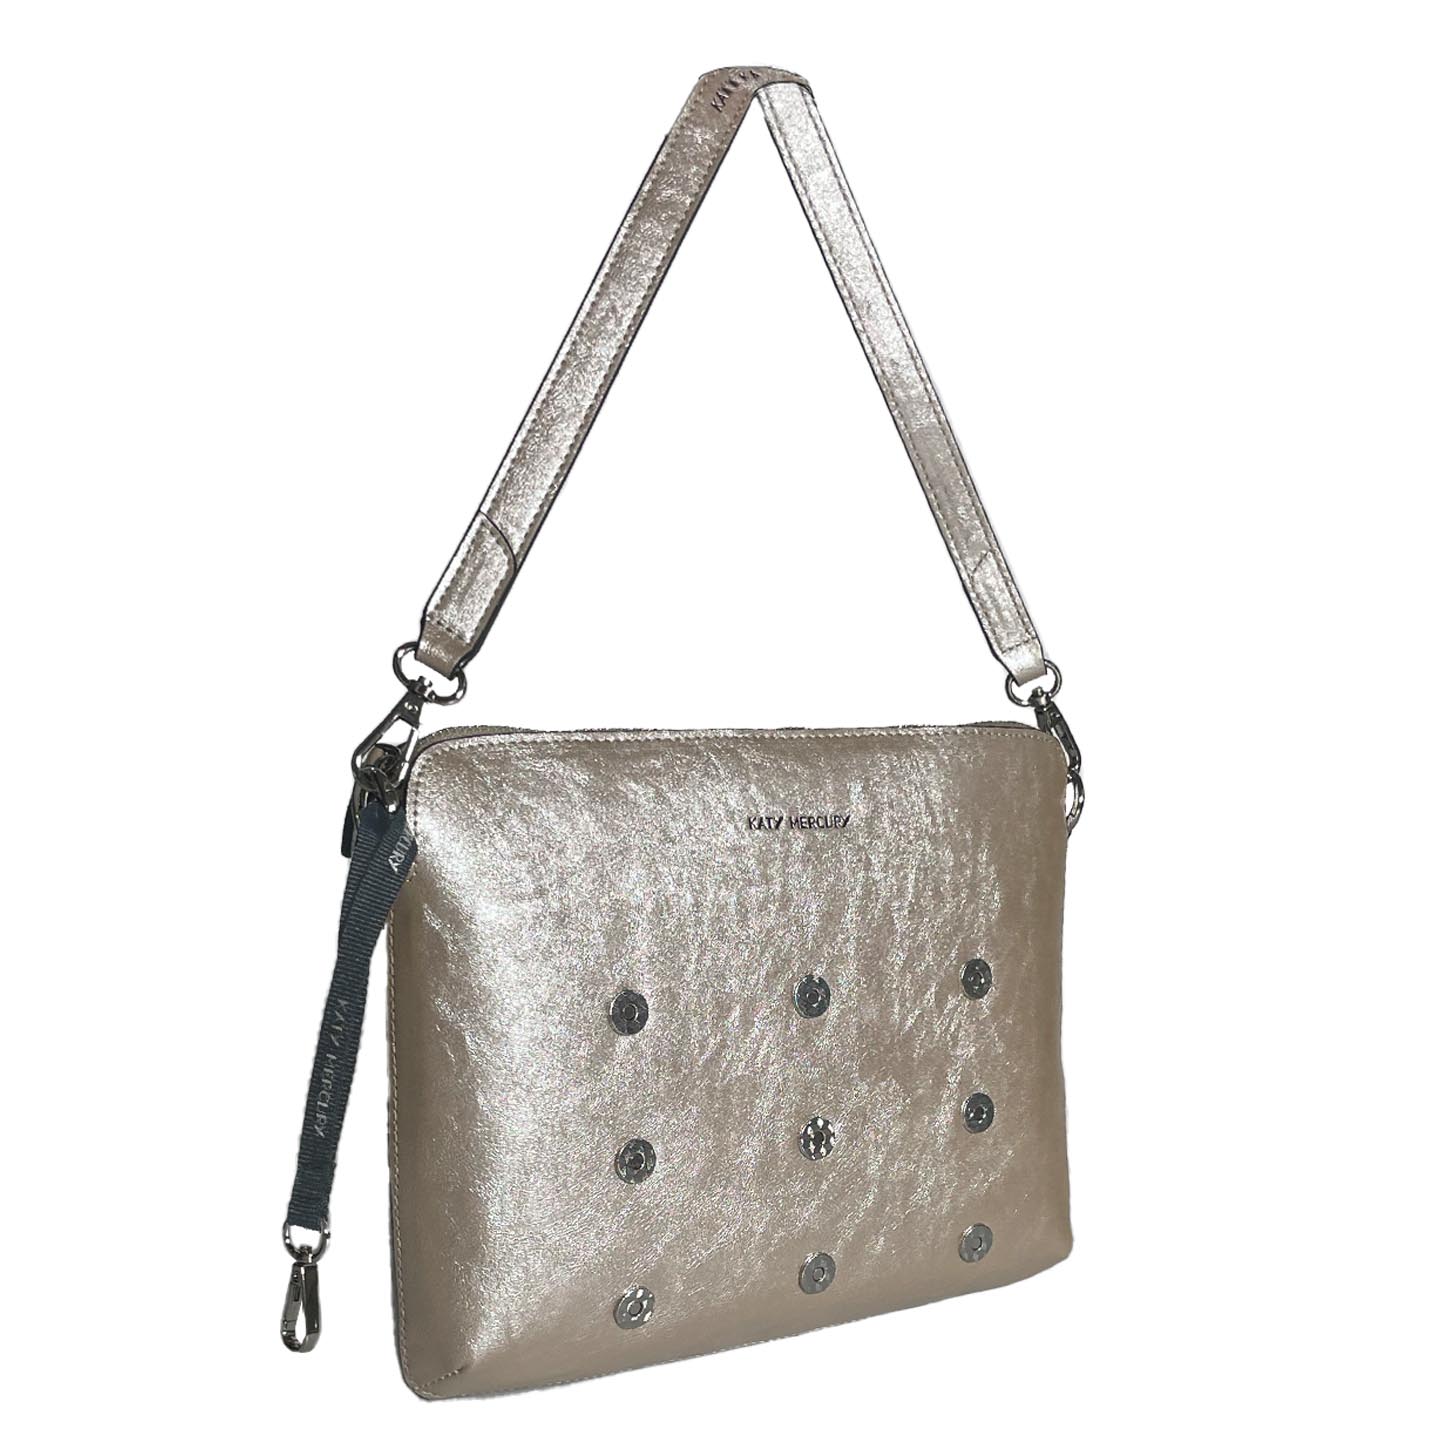 Silberne Business Bag Schultertasche für iPads und Tablets von Katy Mercury wandelbare Taschen mit 9 Magneten zum umstylen und erweitern